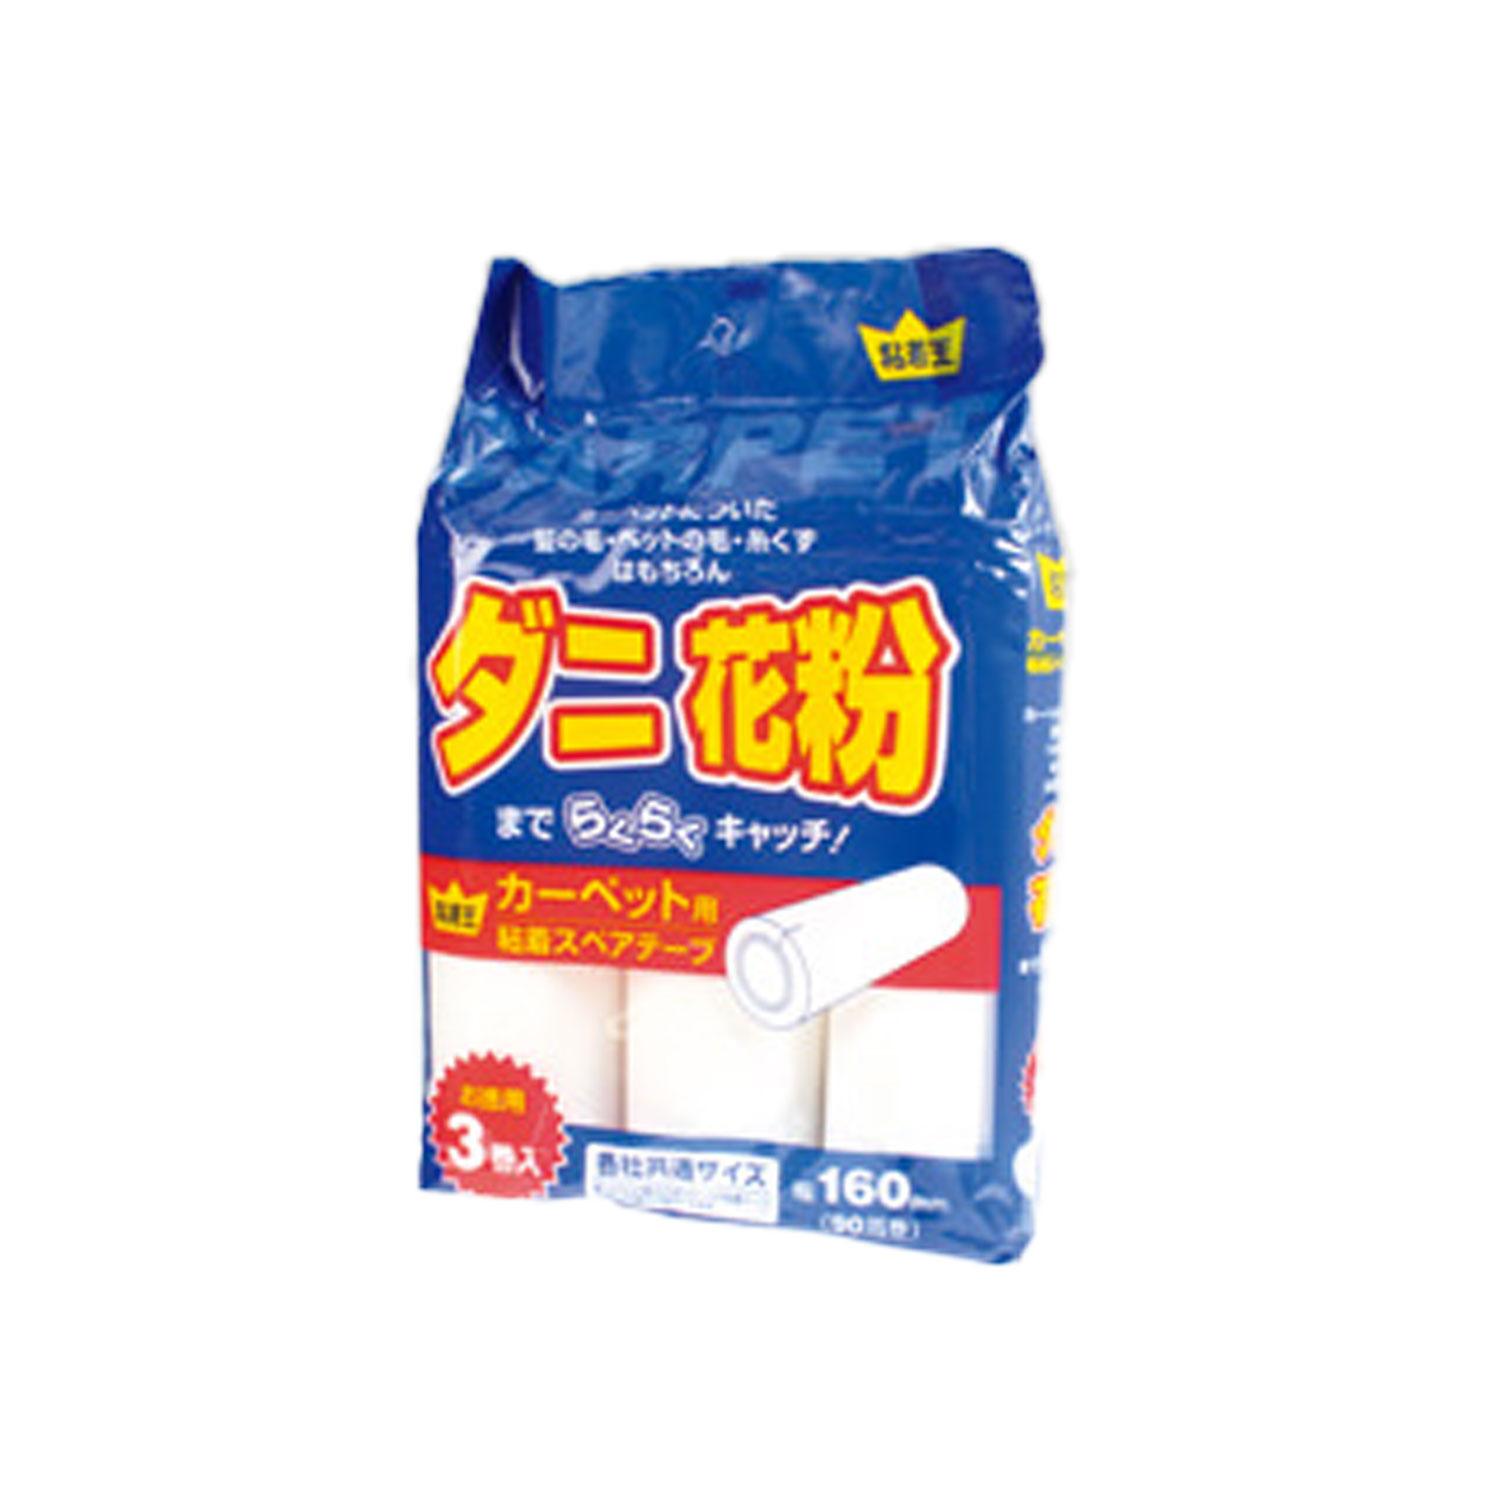 【1袋】粘着王 カ-ペット用全面塗り3P 00219899 プロステ